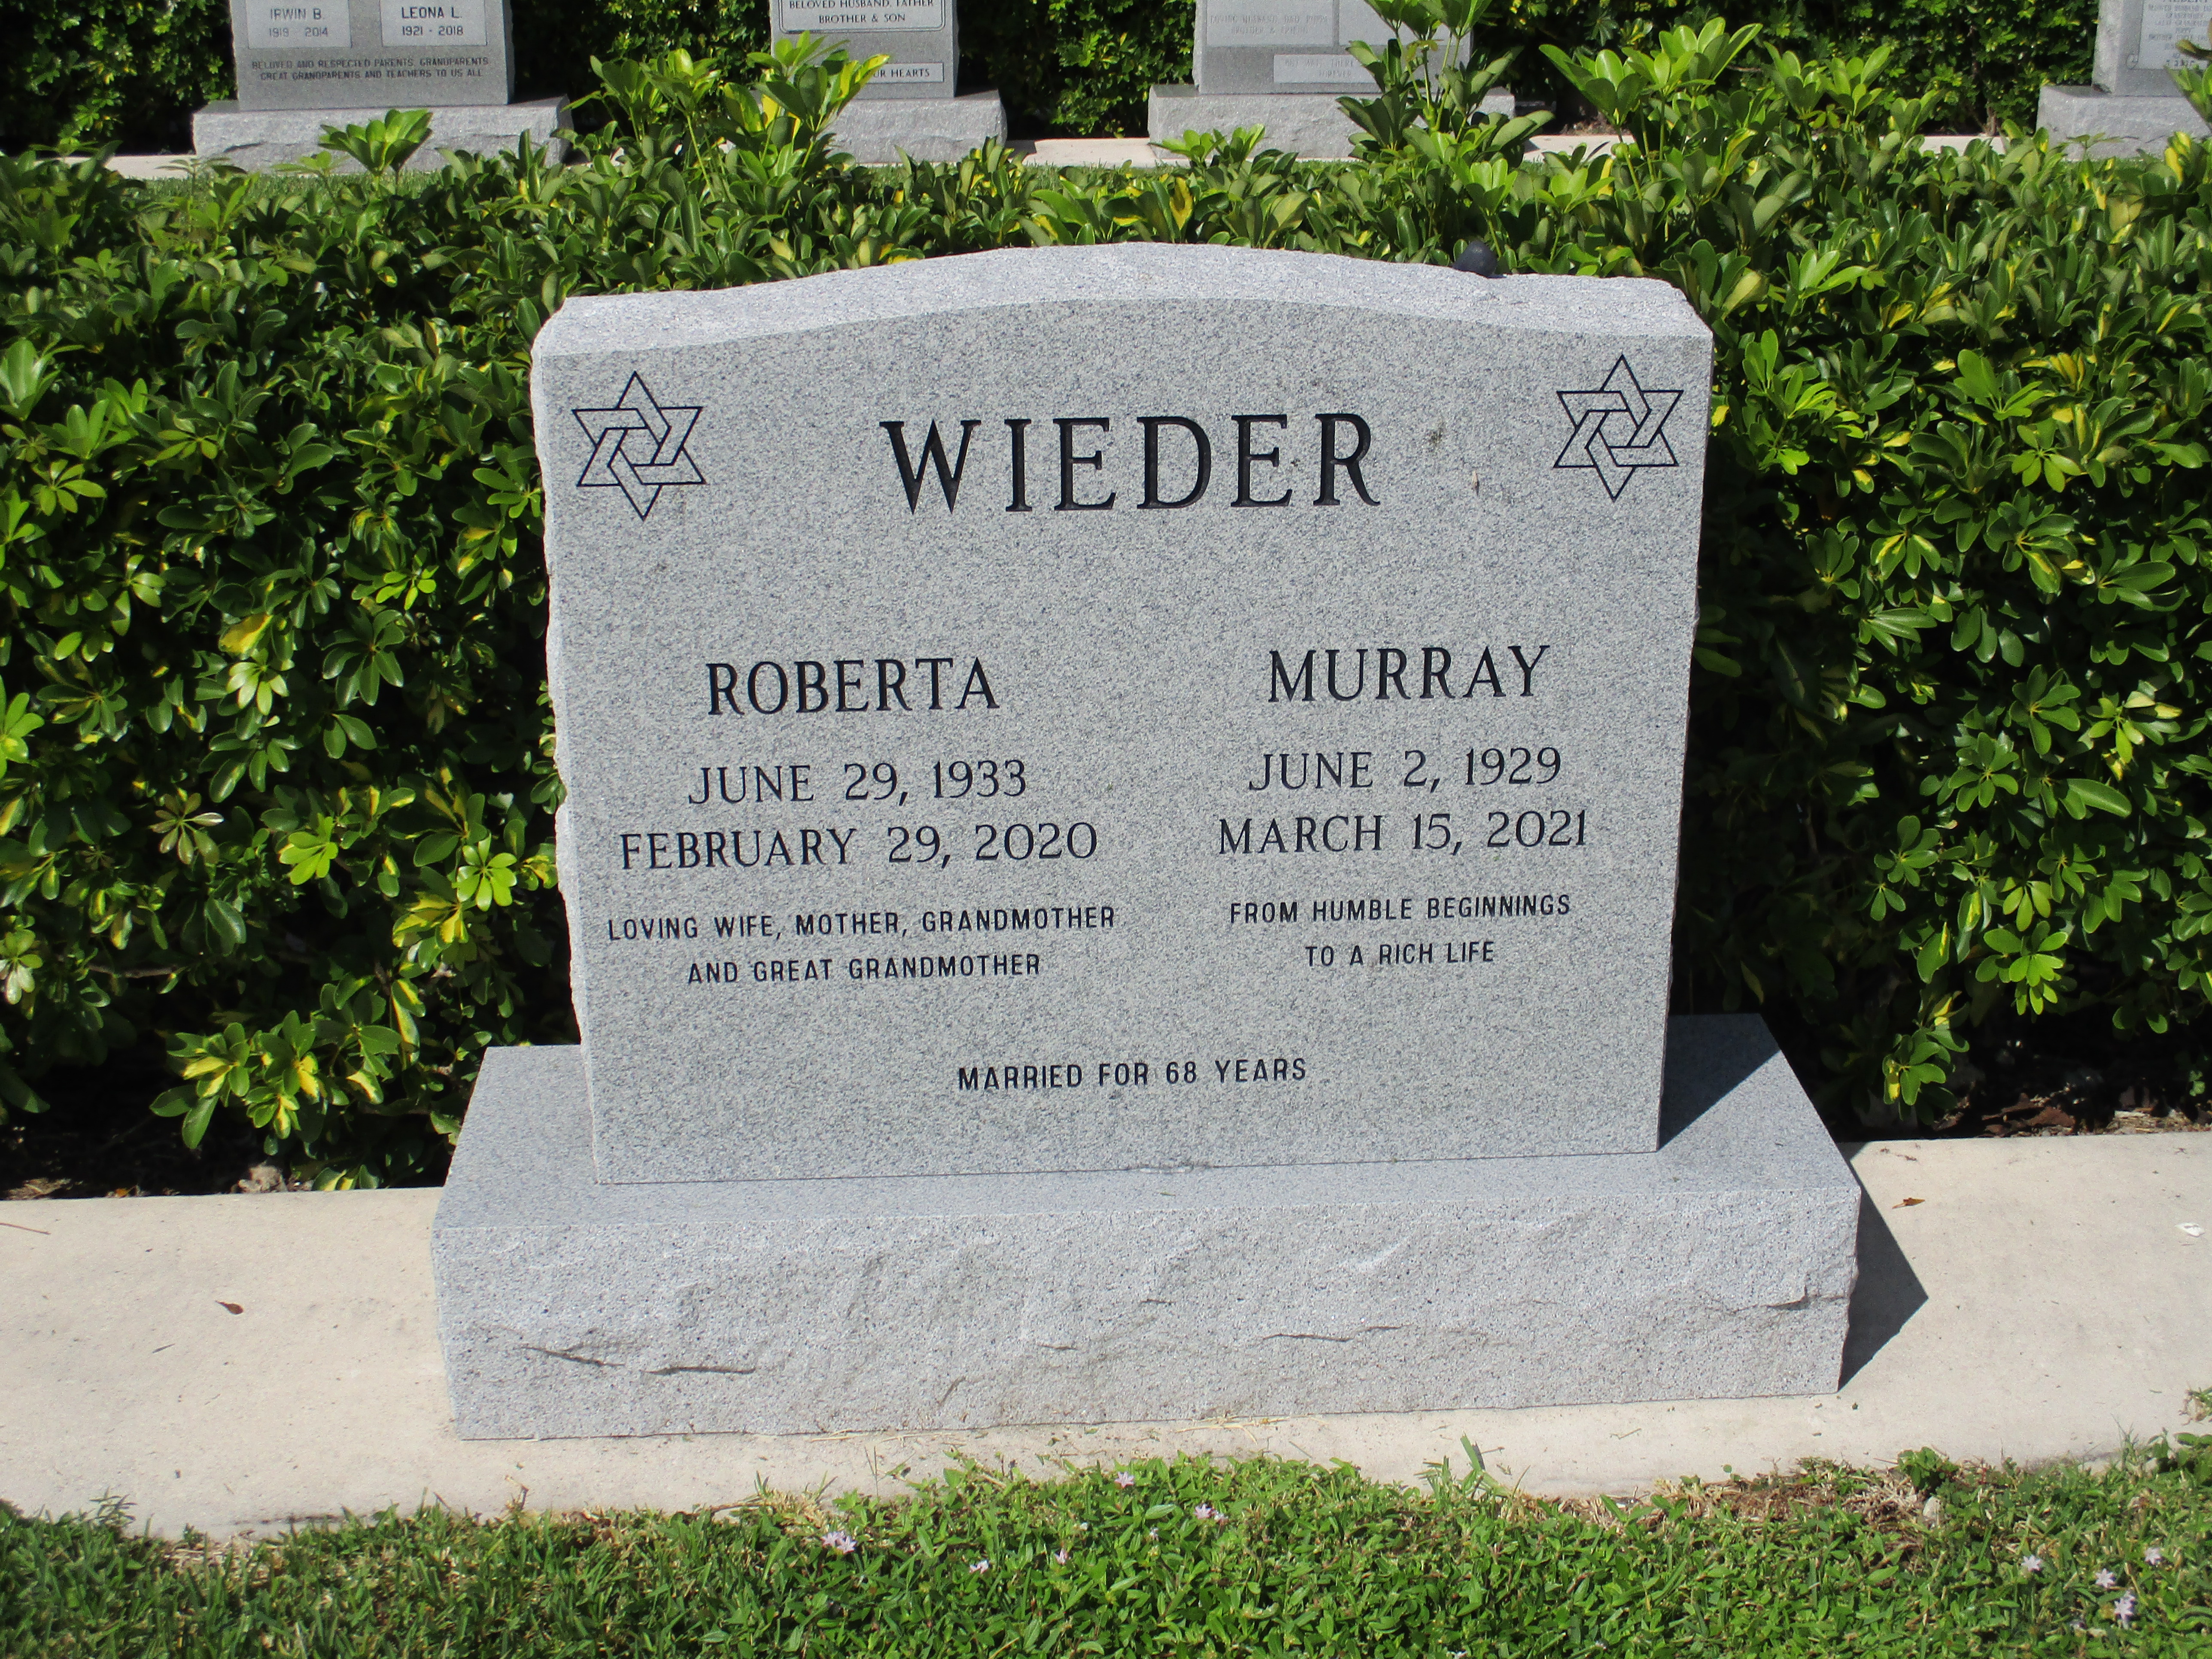 Murray Wieder